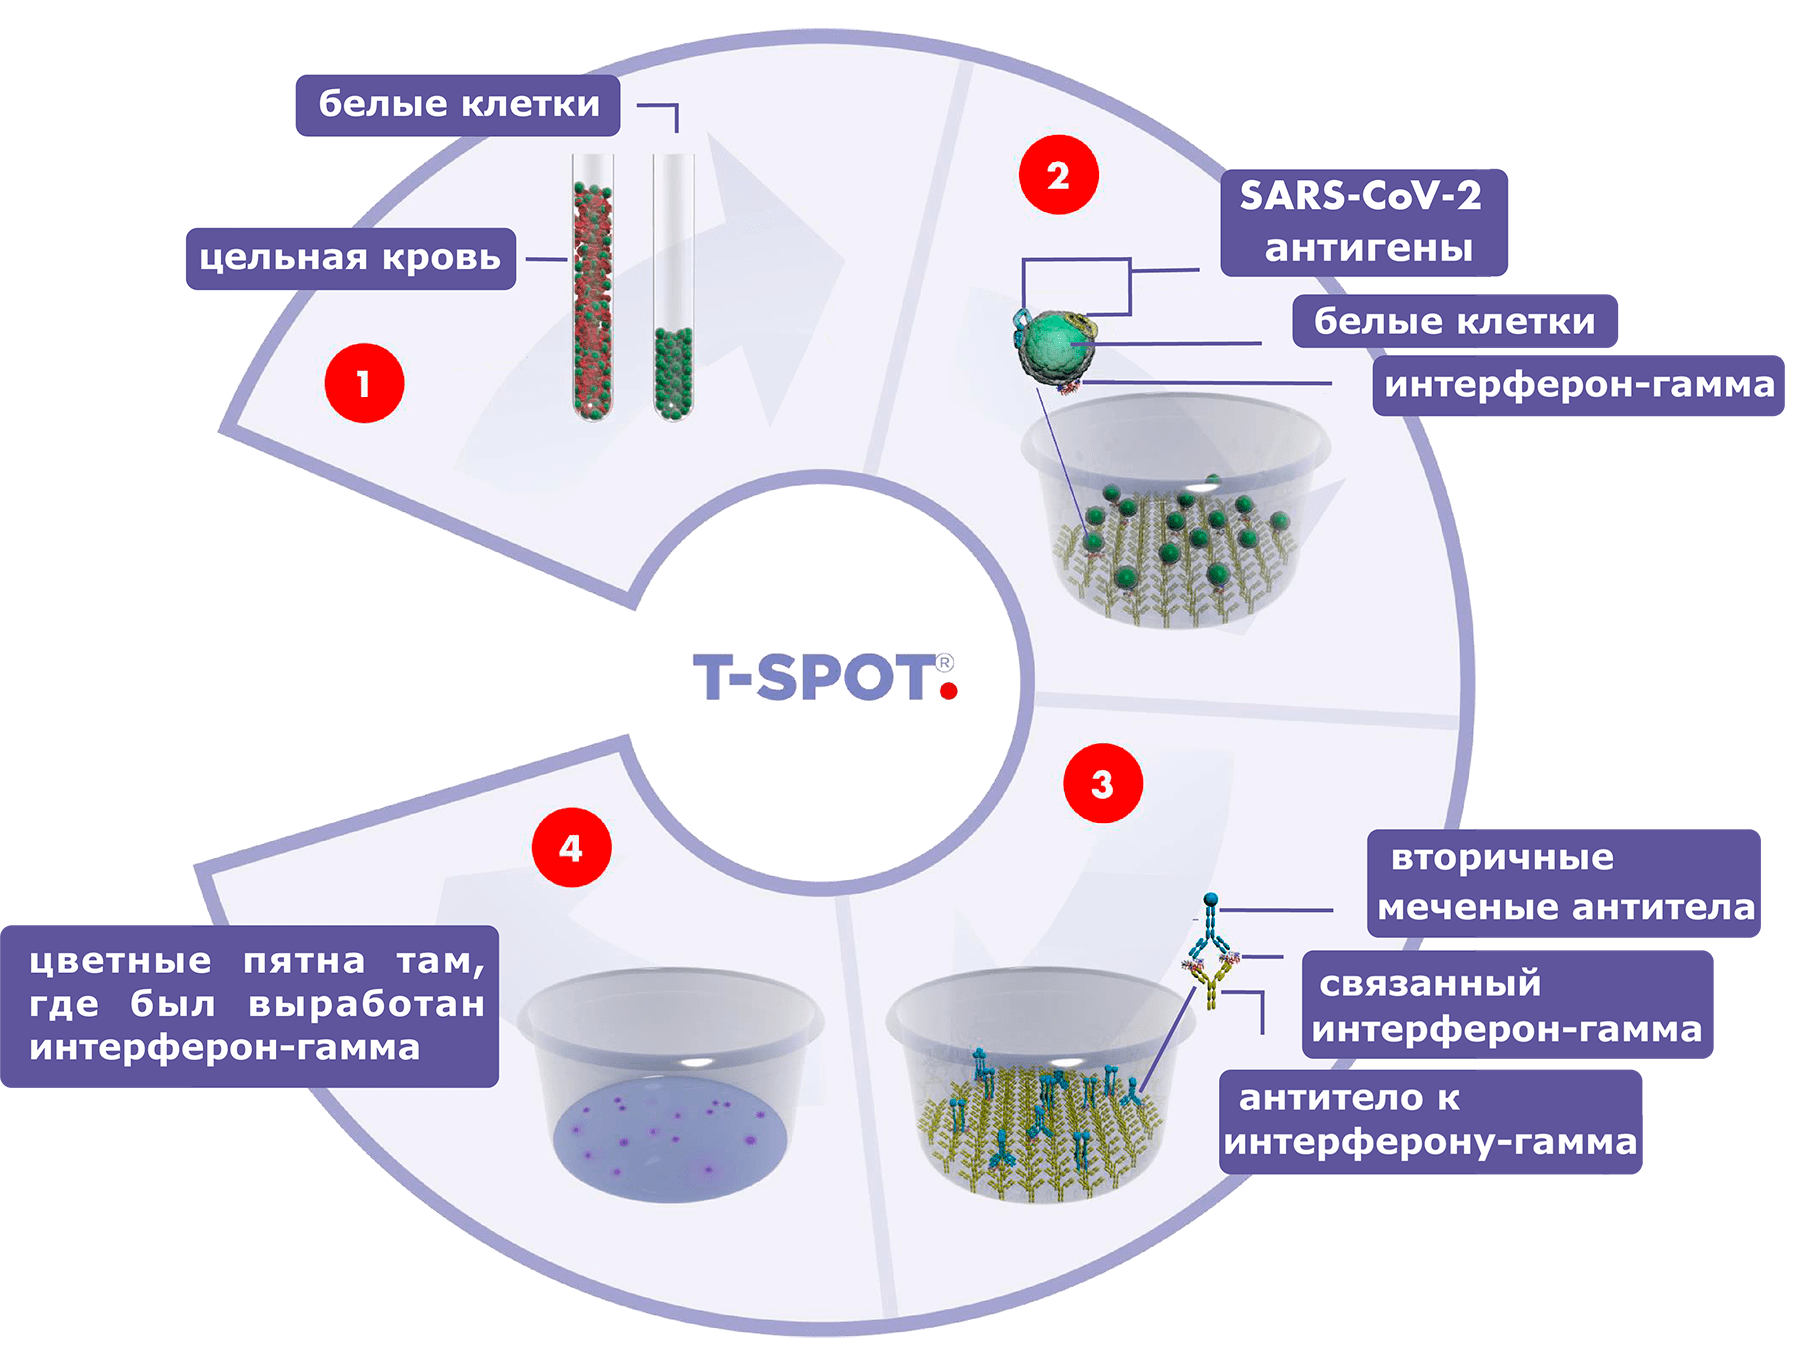 Схема работы теста ELISPOT